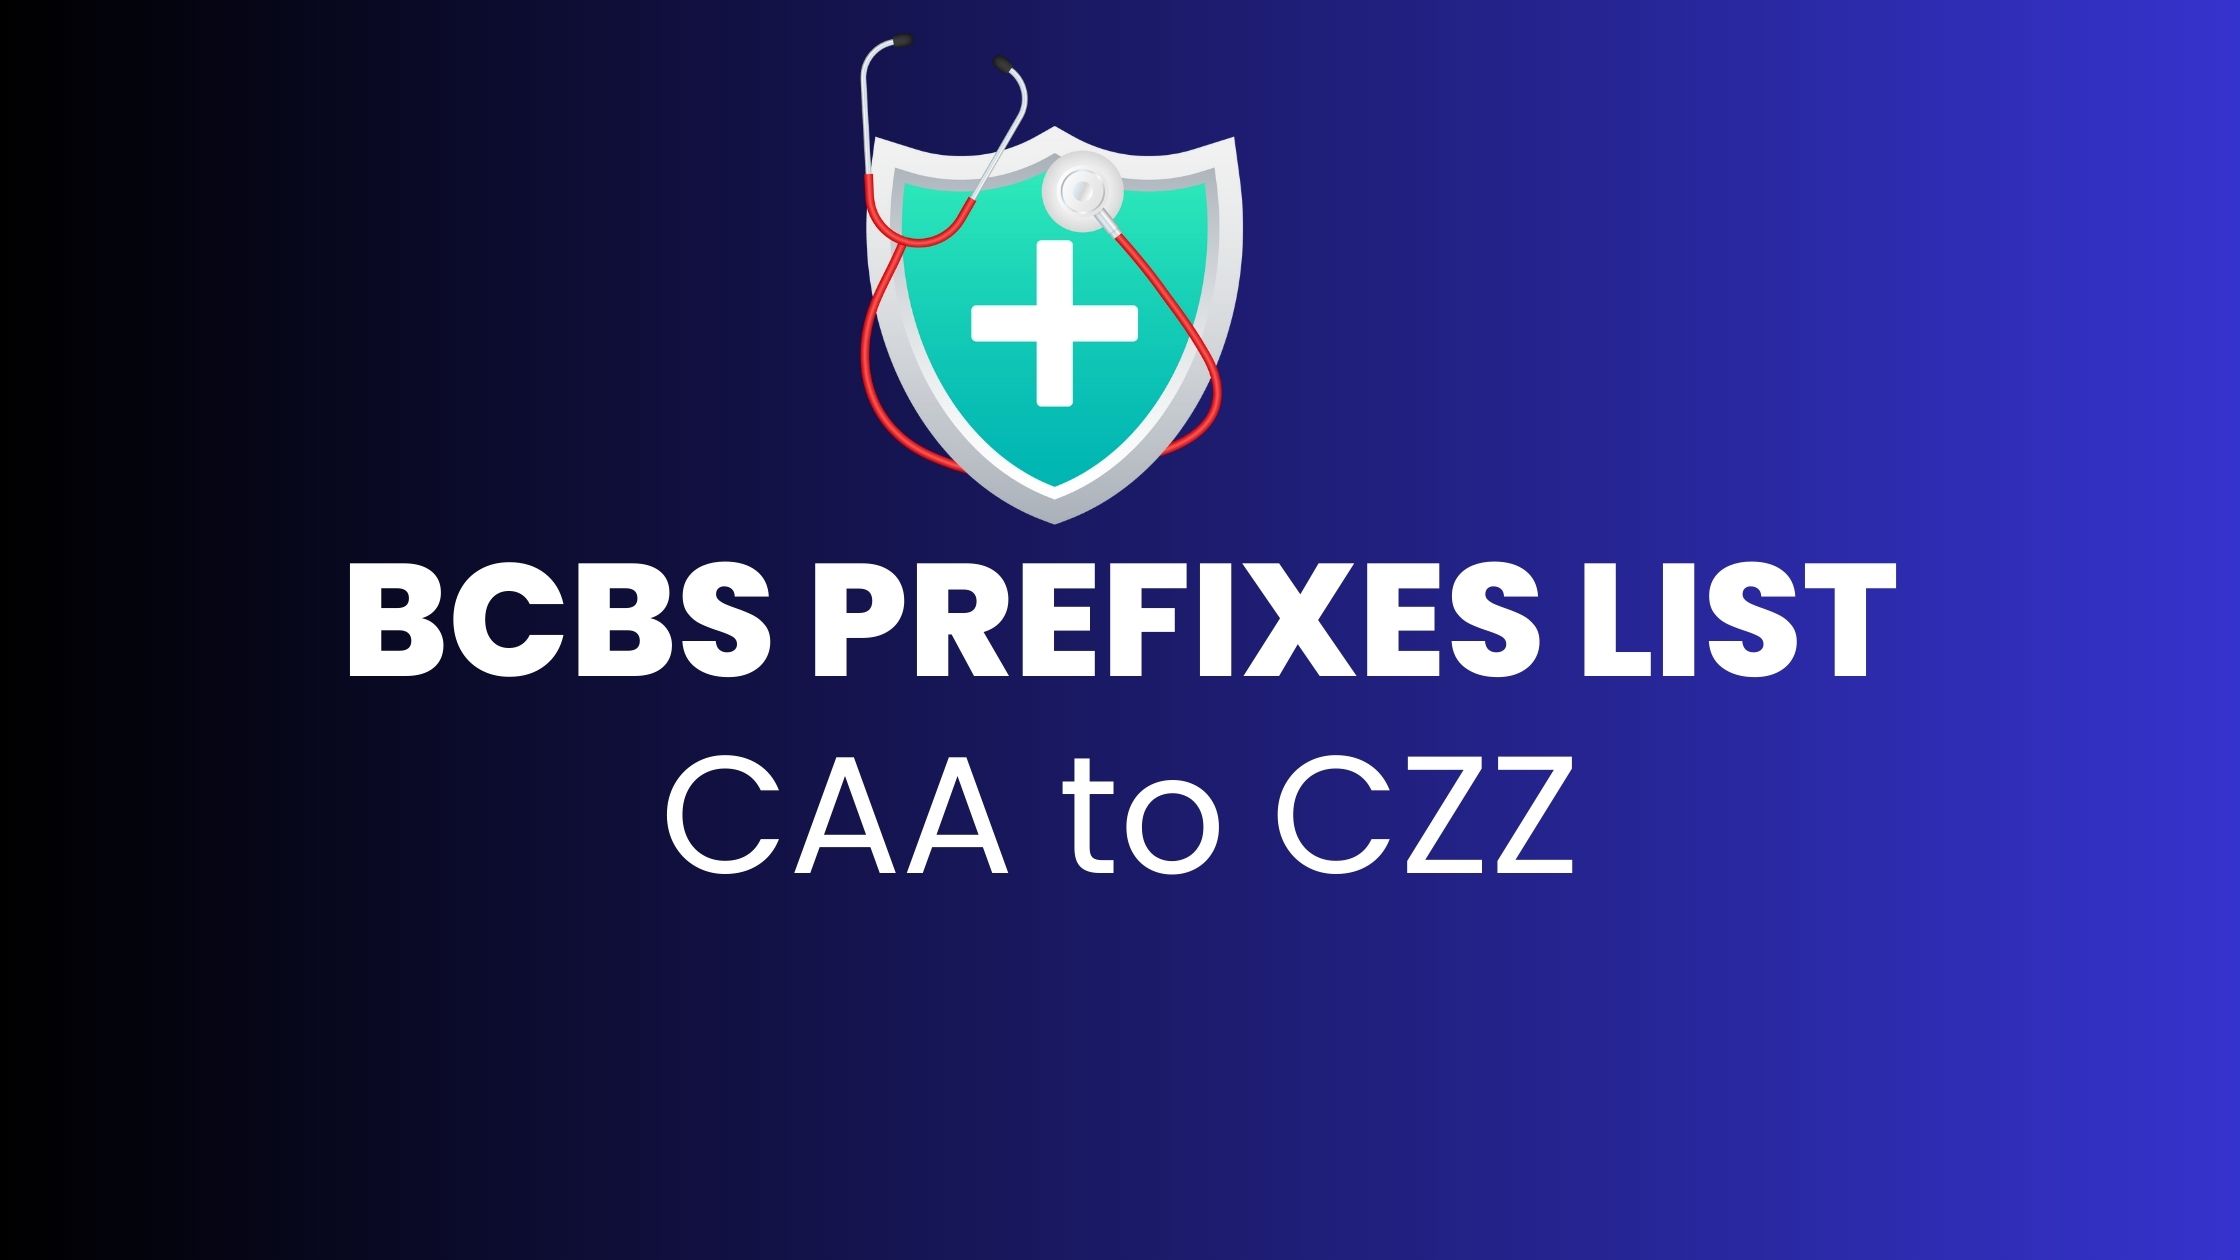 BCBS Prefix CAA to CZZ